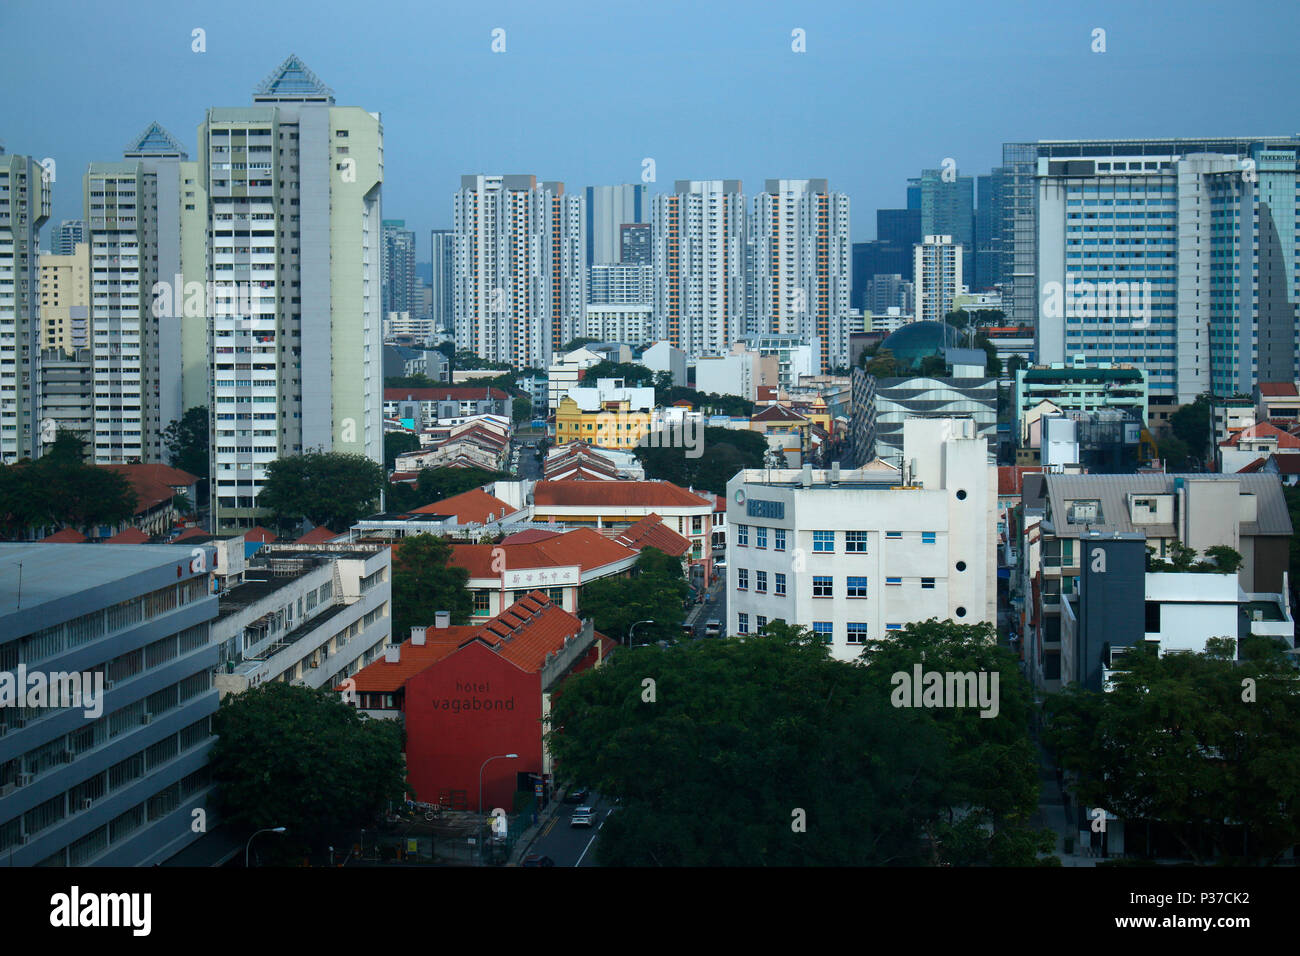 die typische Skyline Sinpagurs mit millelhohen Wohnhochhaeusern, von denen viele zum 'Housing Development Board (HDB)' gehoeren, einer Art Eigentumswo Stock Photo